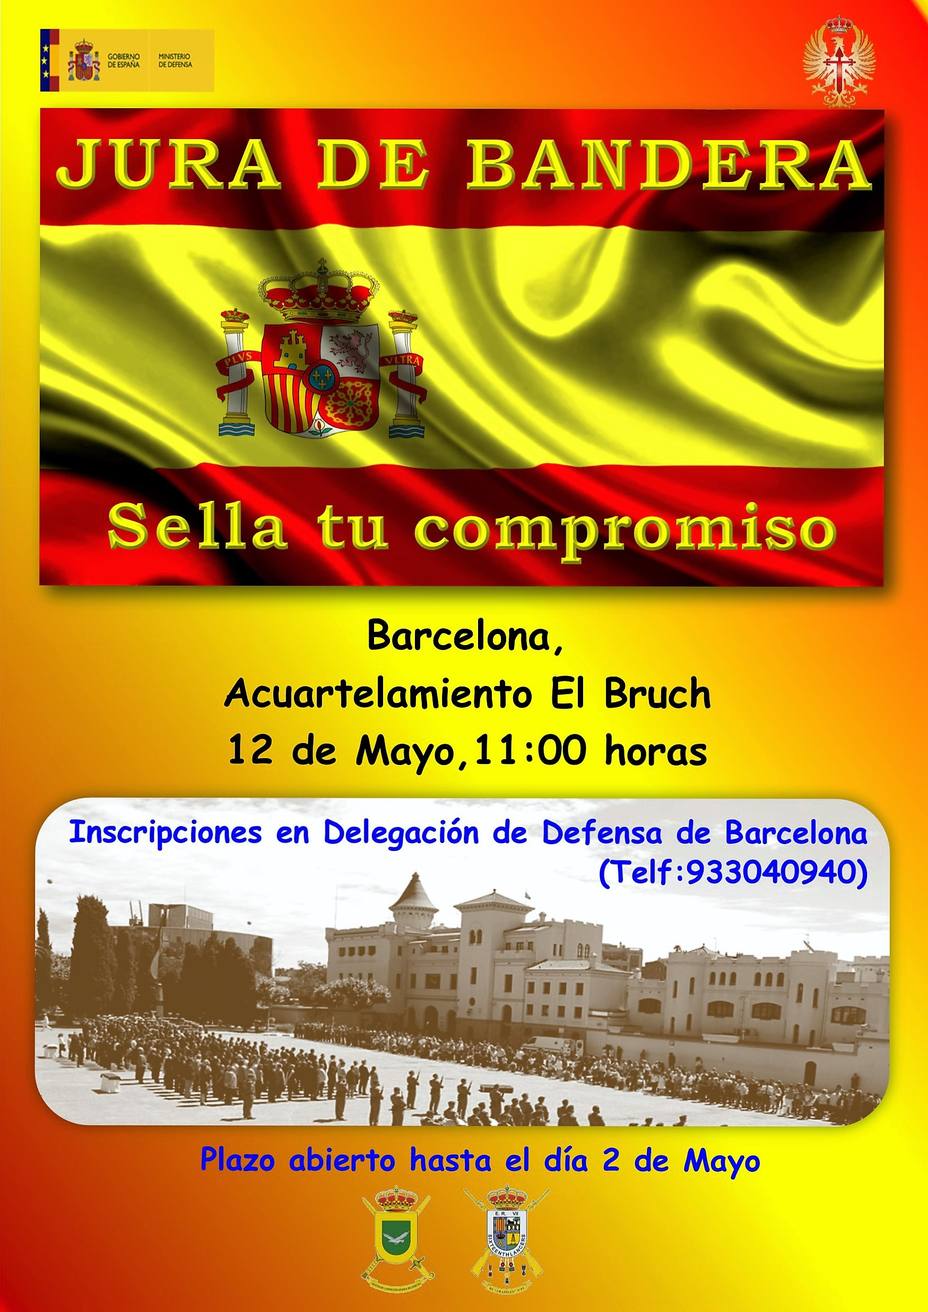 Jura de bandera en Barcelona este fin de semana